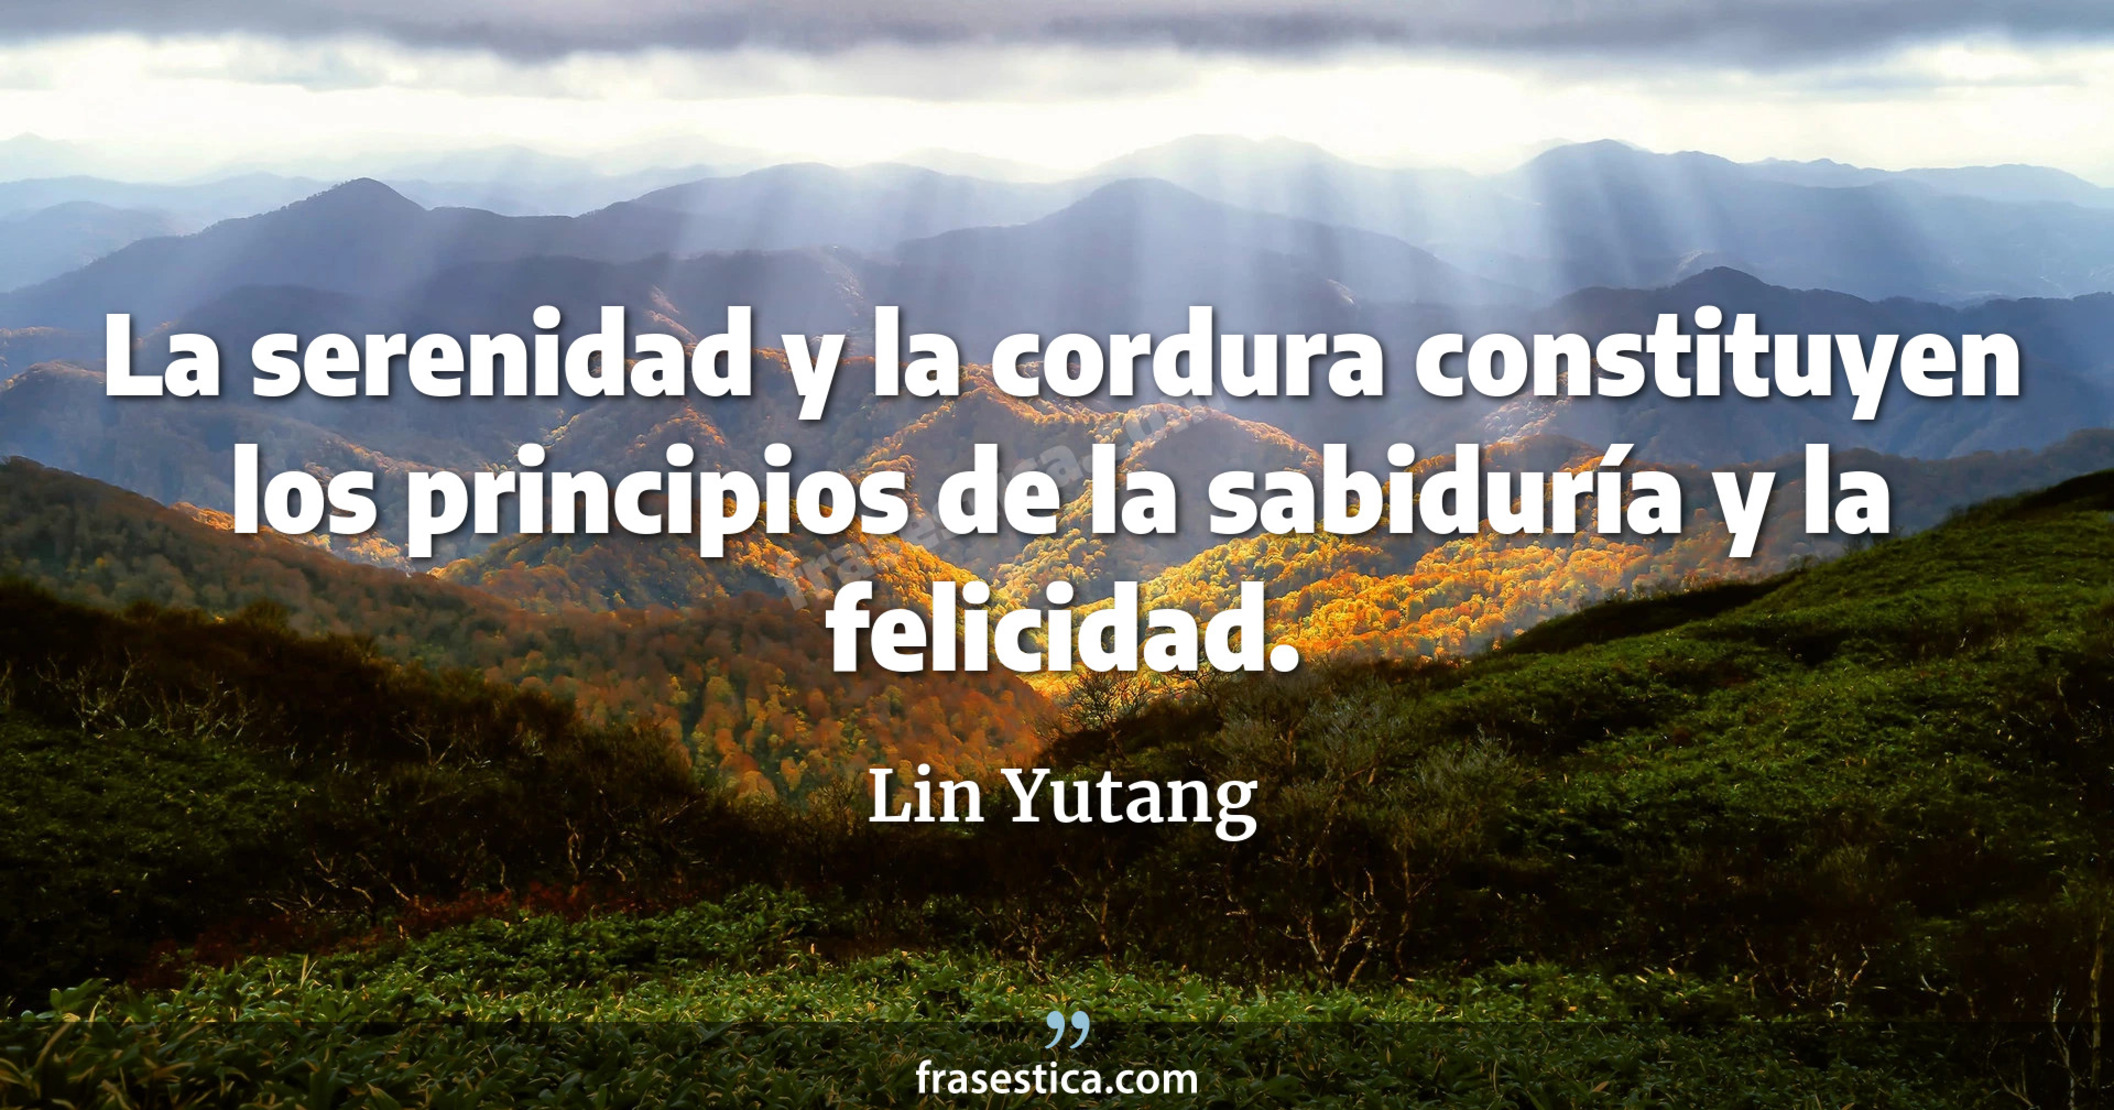 La serenidad y la cordura constituyen los principios de la sabiduría y la felicidad. - Lin Yutang